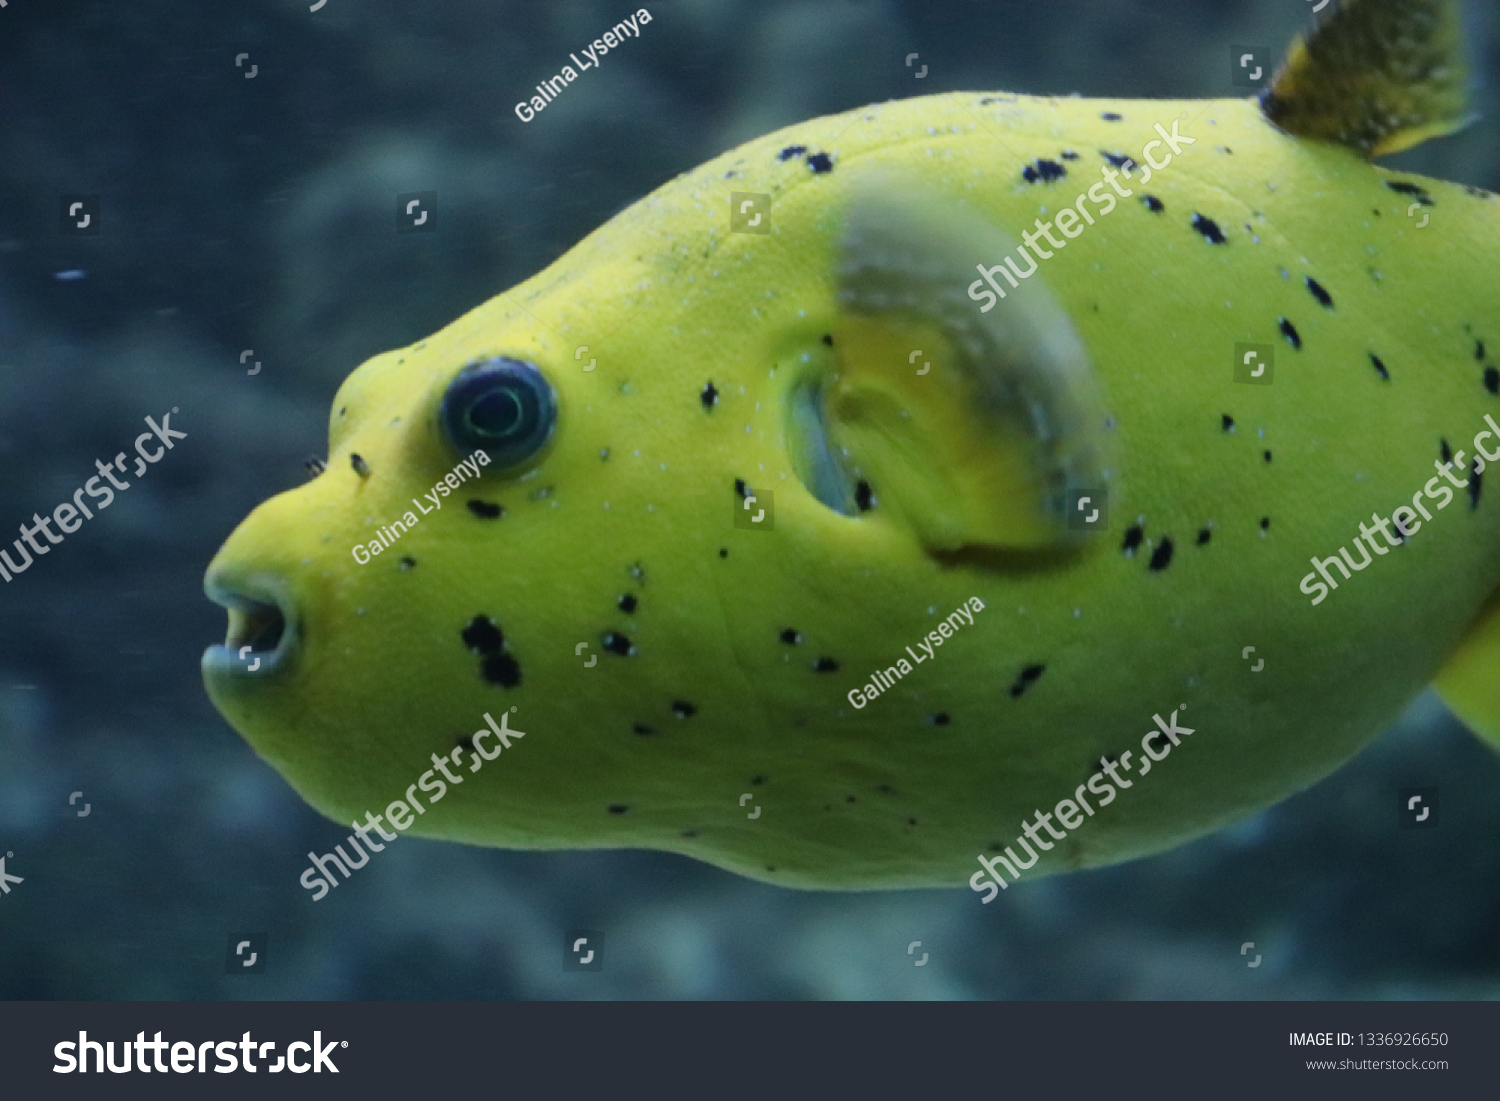 yellow blowfish